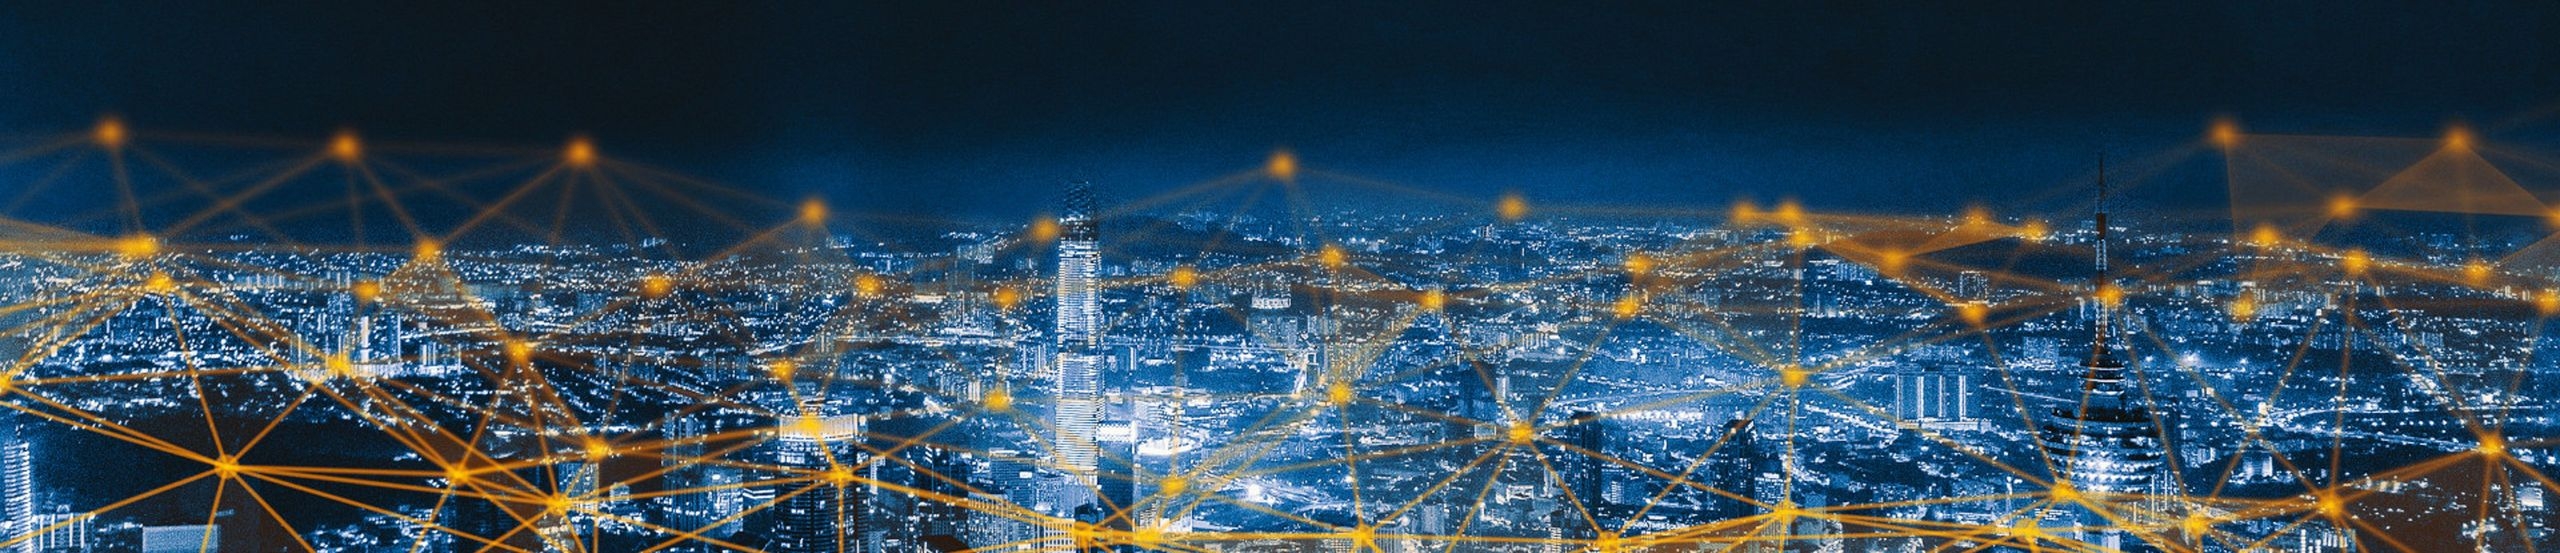 Blick auf eine Stadt bei Nacht, in der alle Geräte symbolisch per IoT-Cloud vernetzt sind